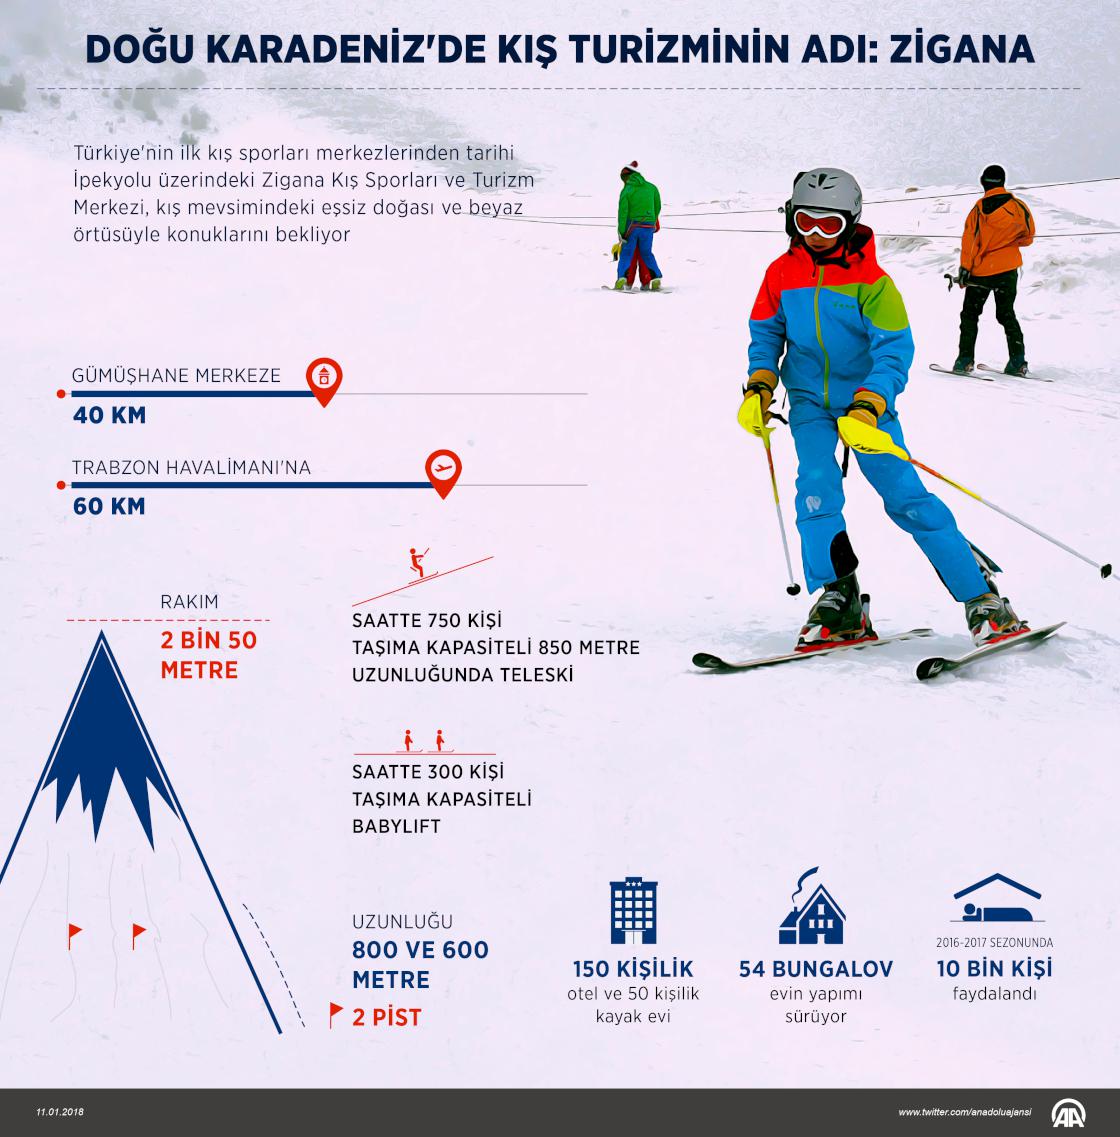 Doğu Karadeniz'de kış turizminin adı Zigana